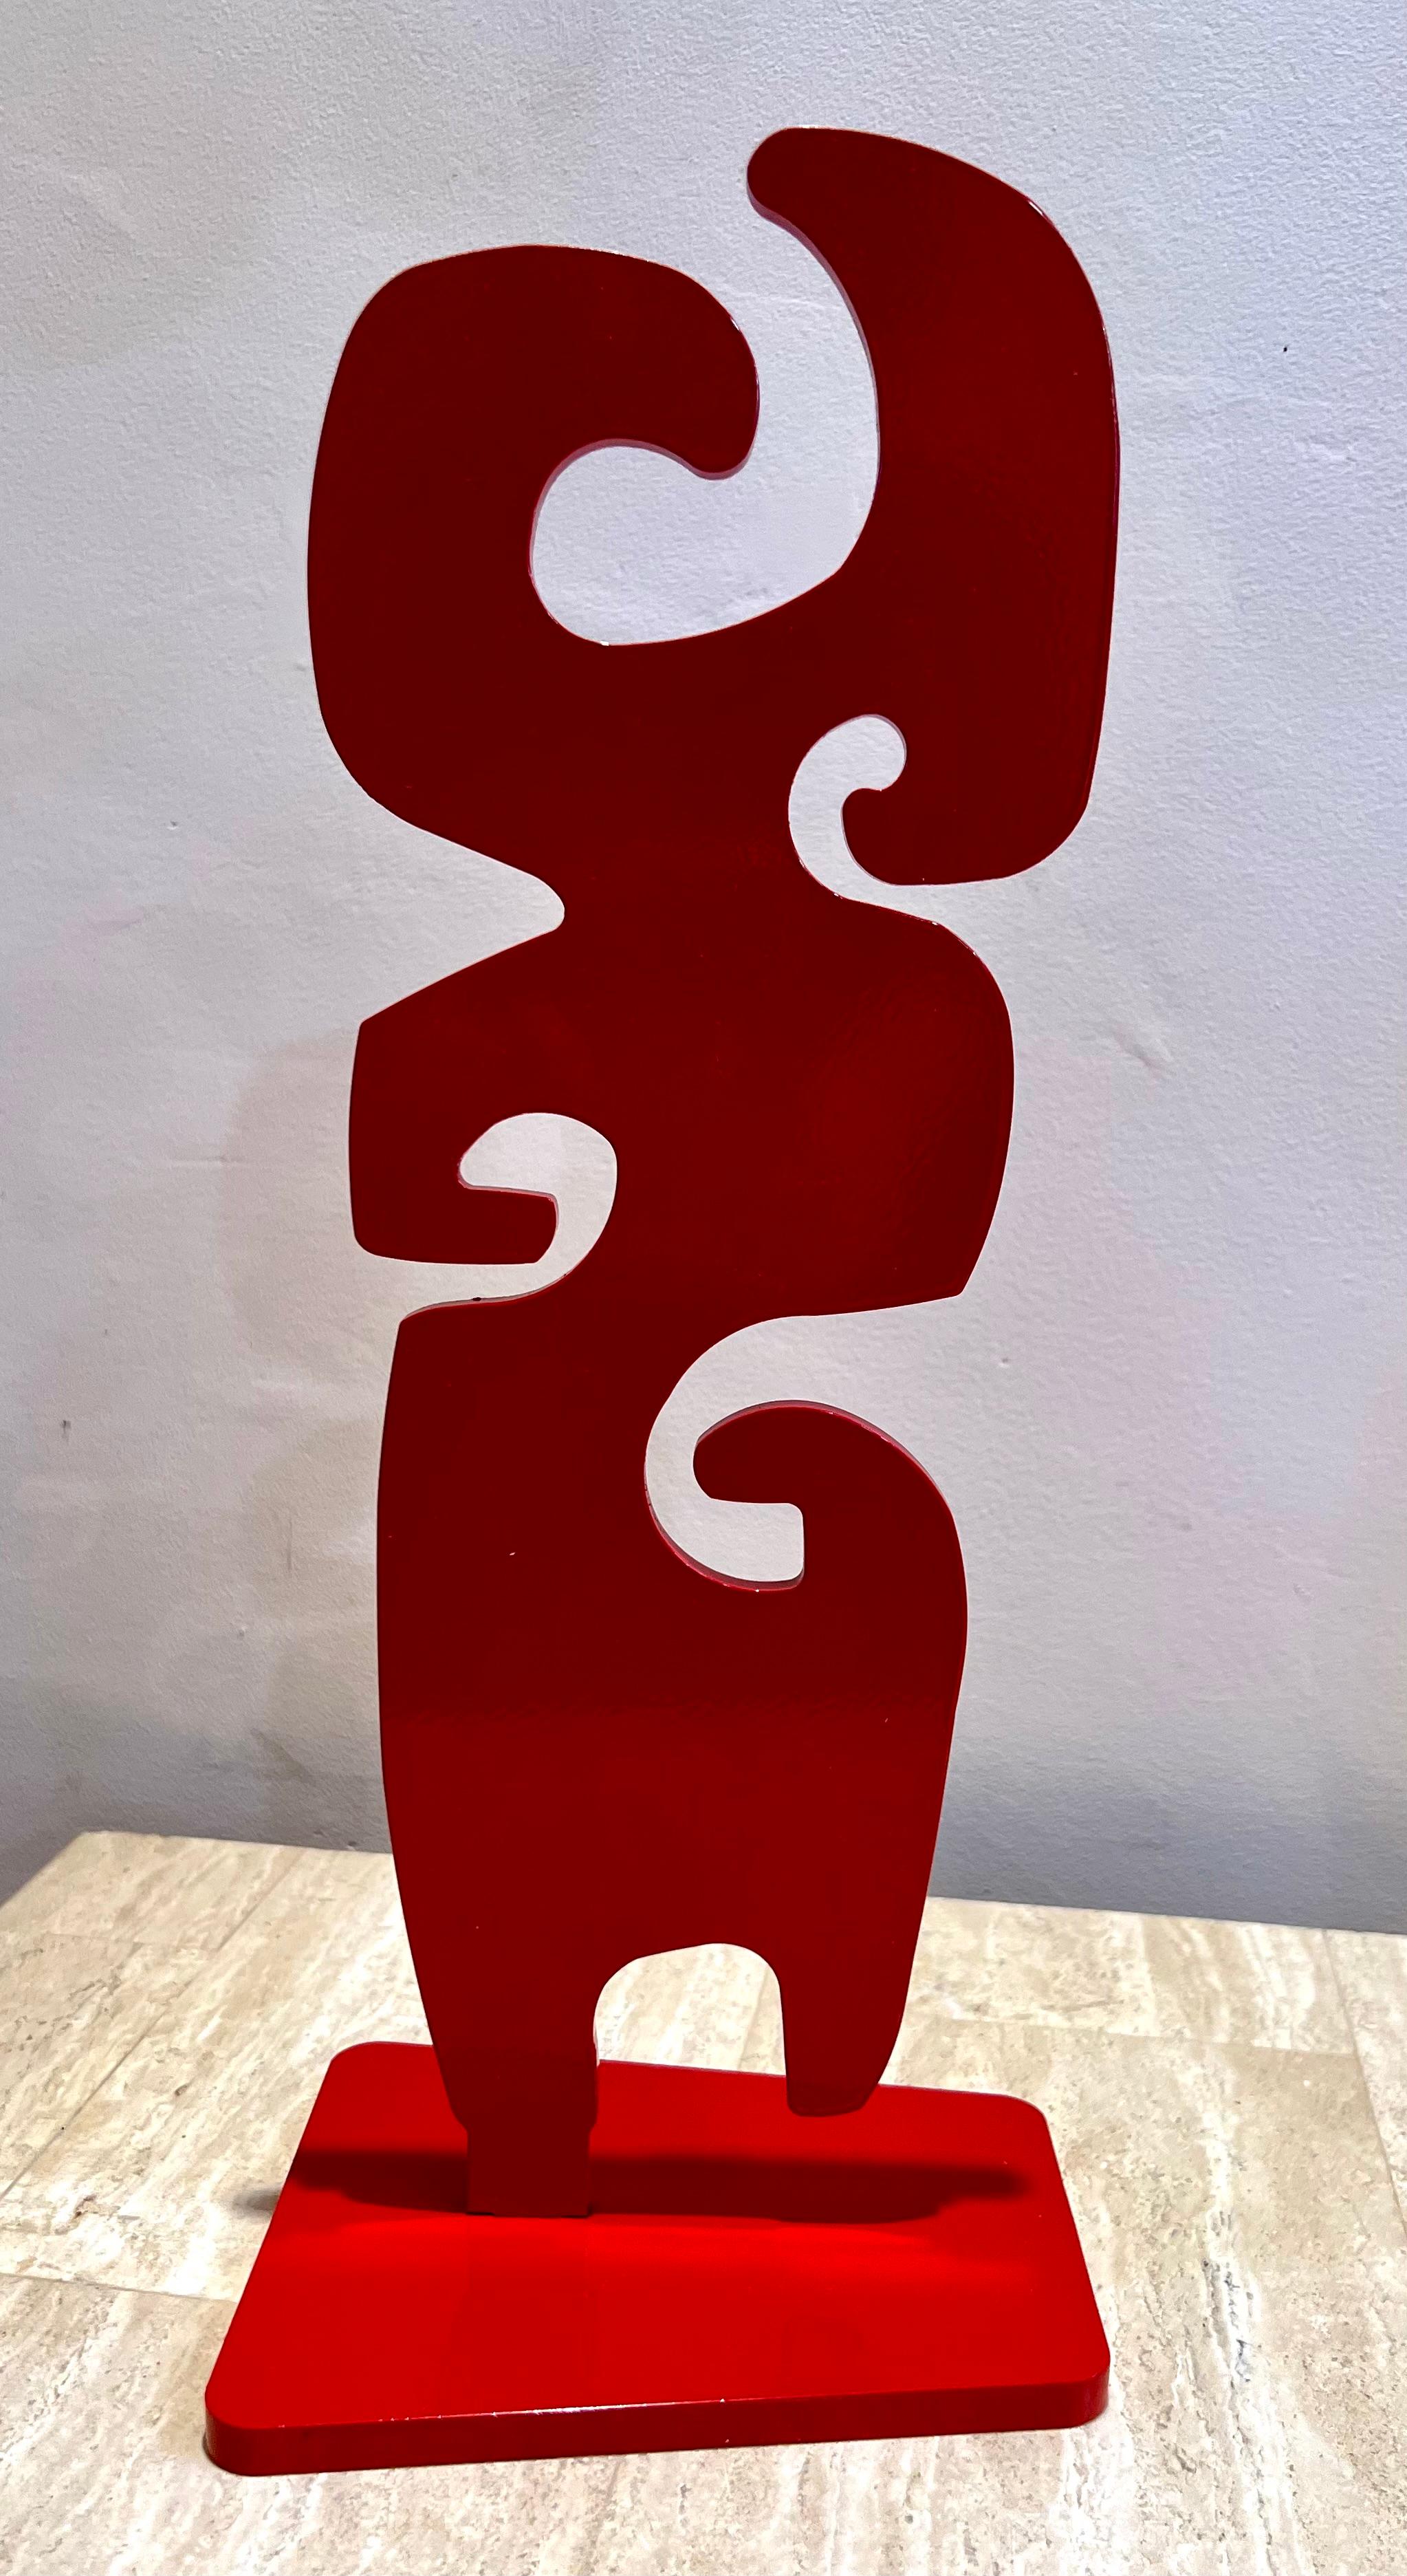 Großmutter, von Melanie Yazzie, Skulptur, Auflage, Aluminium, rot, abstrakt 

limitierte Auflage von 40 Stück. Erhältlich in Rot oder Silber. Erkundigen Sie sich in der Galerie nach weiteren Farboptionen und Größen.

Als Grafikerin, Malerin und